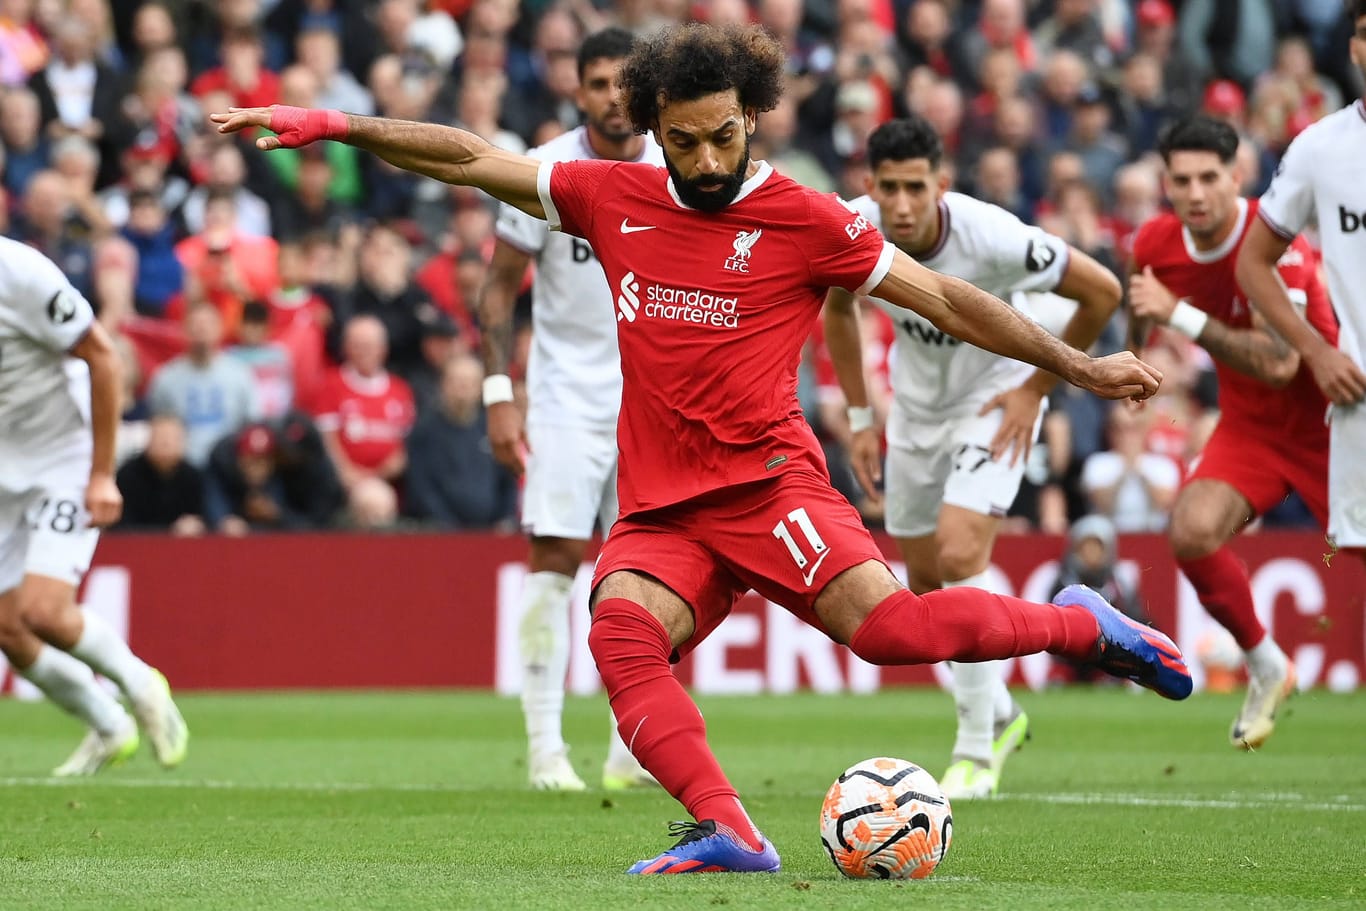 Traf zur ersten Liverpool-Führung: Mo Salah beim Elfmeter gegen West Ham.